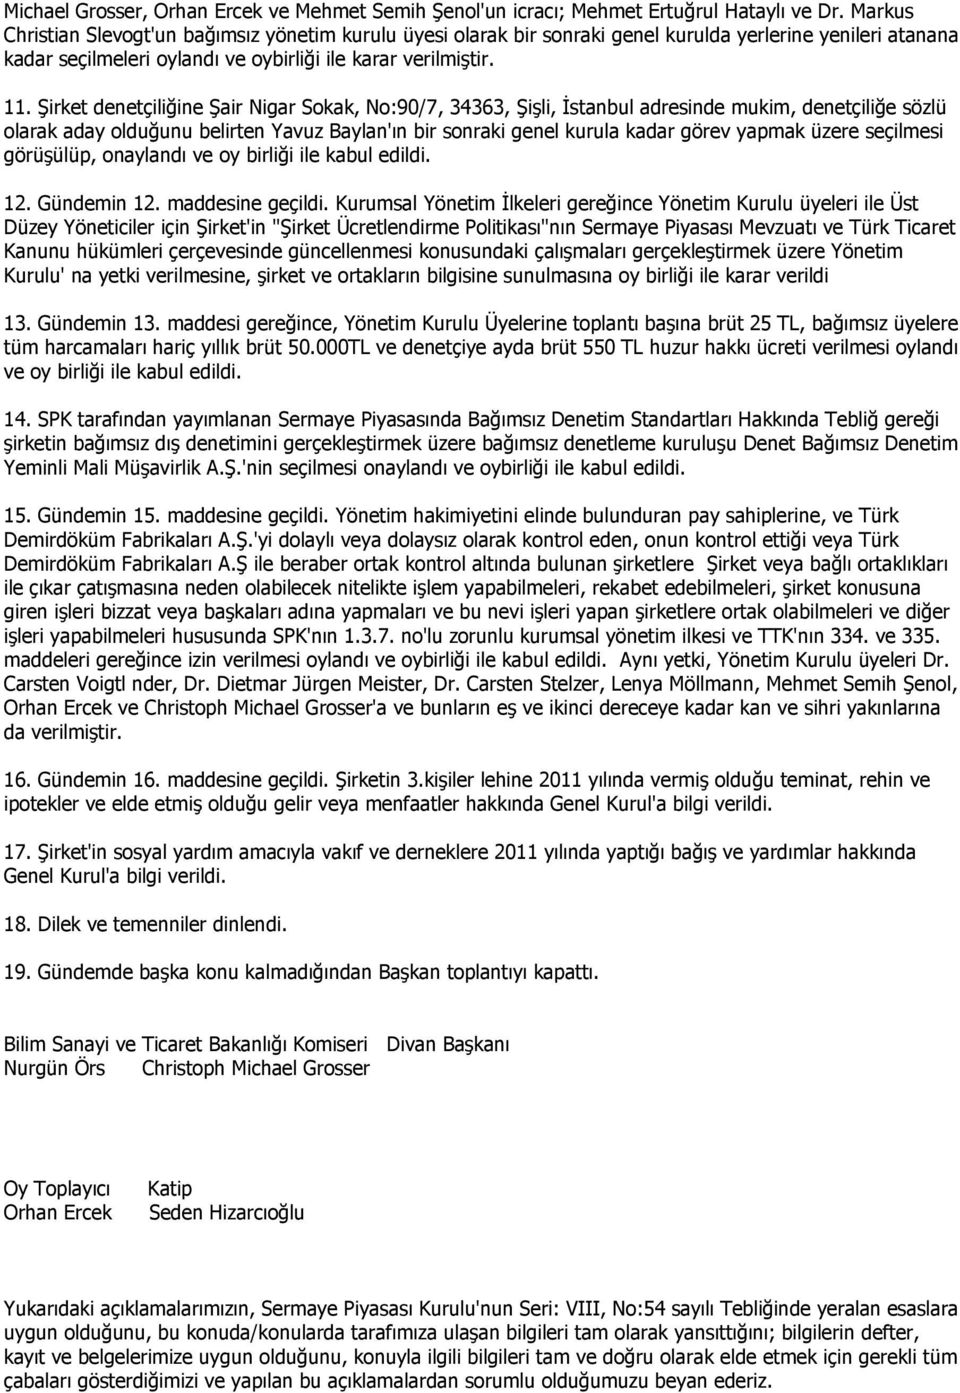 Şirket denetçiliğine Şair Nigar Sokak, No:90/7, 34363, Şişli, İstanbul adresinde mukim, denetçiliğe sözlü olarak aday olduğunu belirten Yavuz Baylan'ın bir sonraki genel kurula kadar görev yapmak